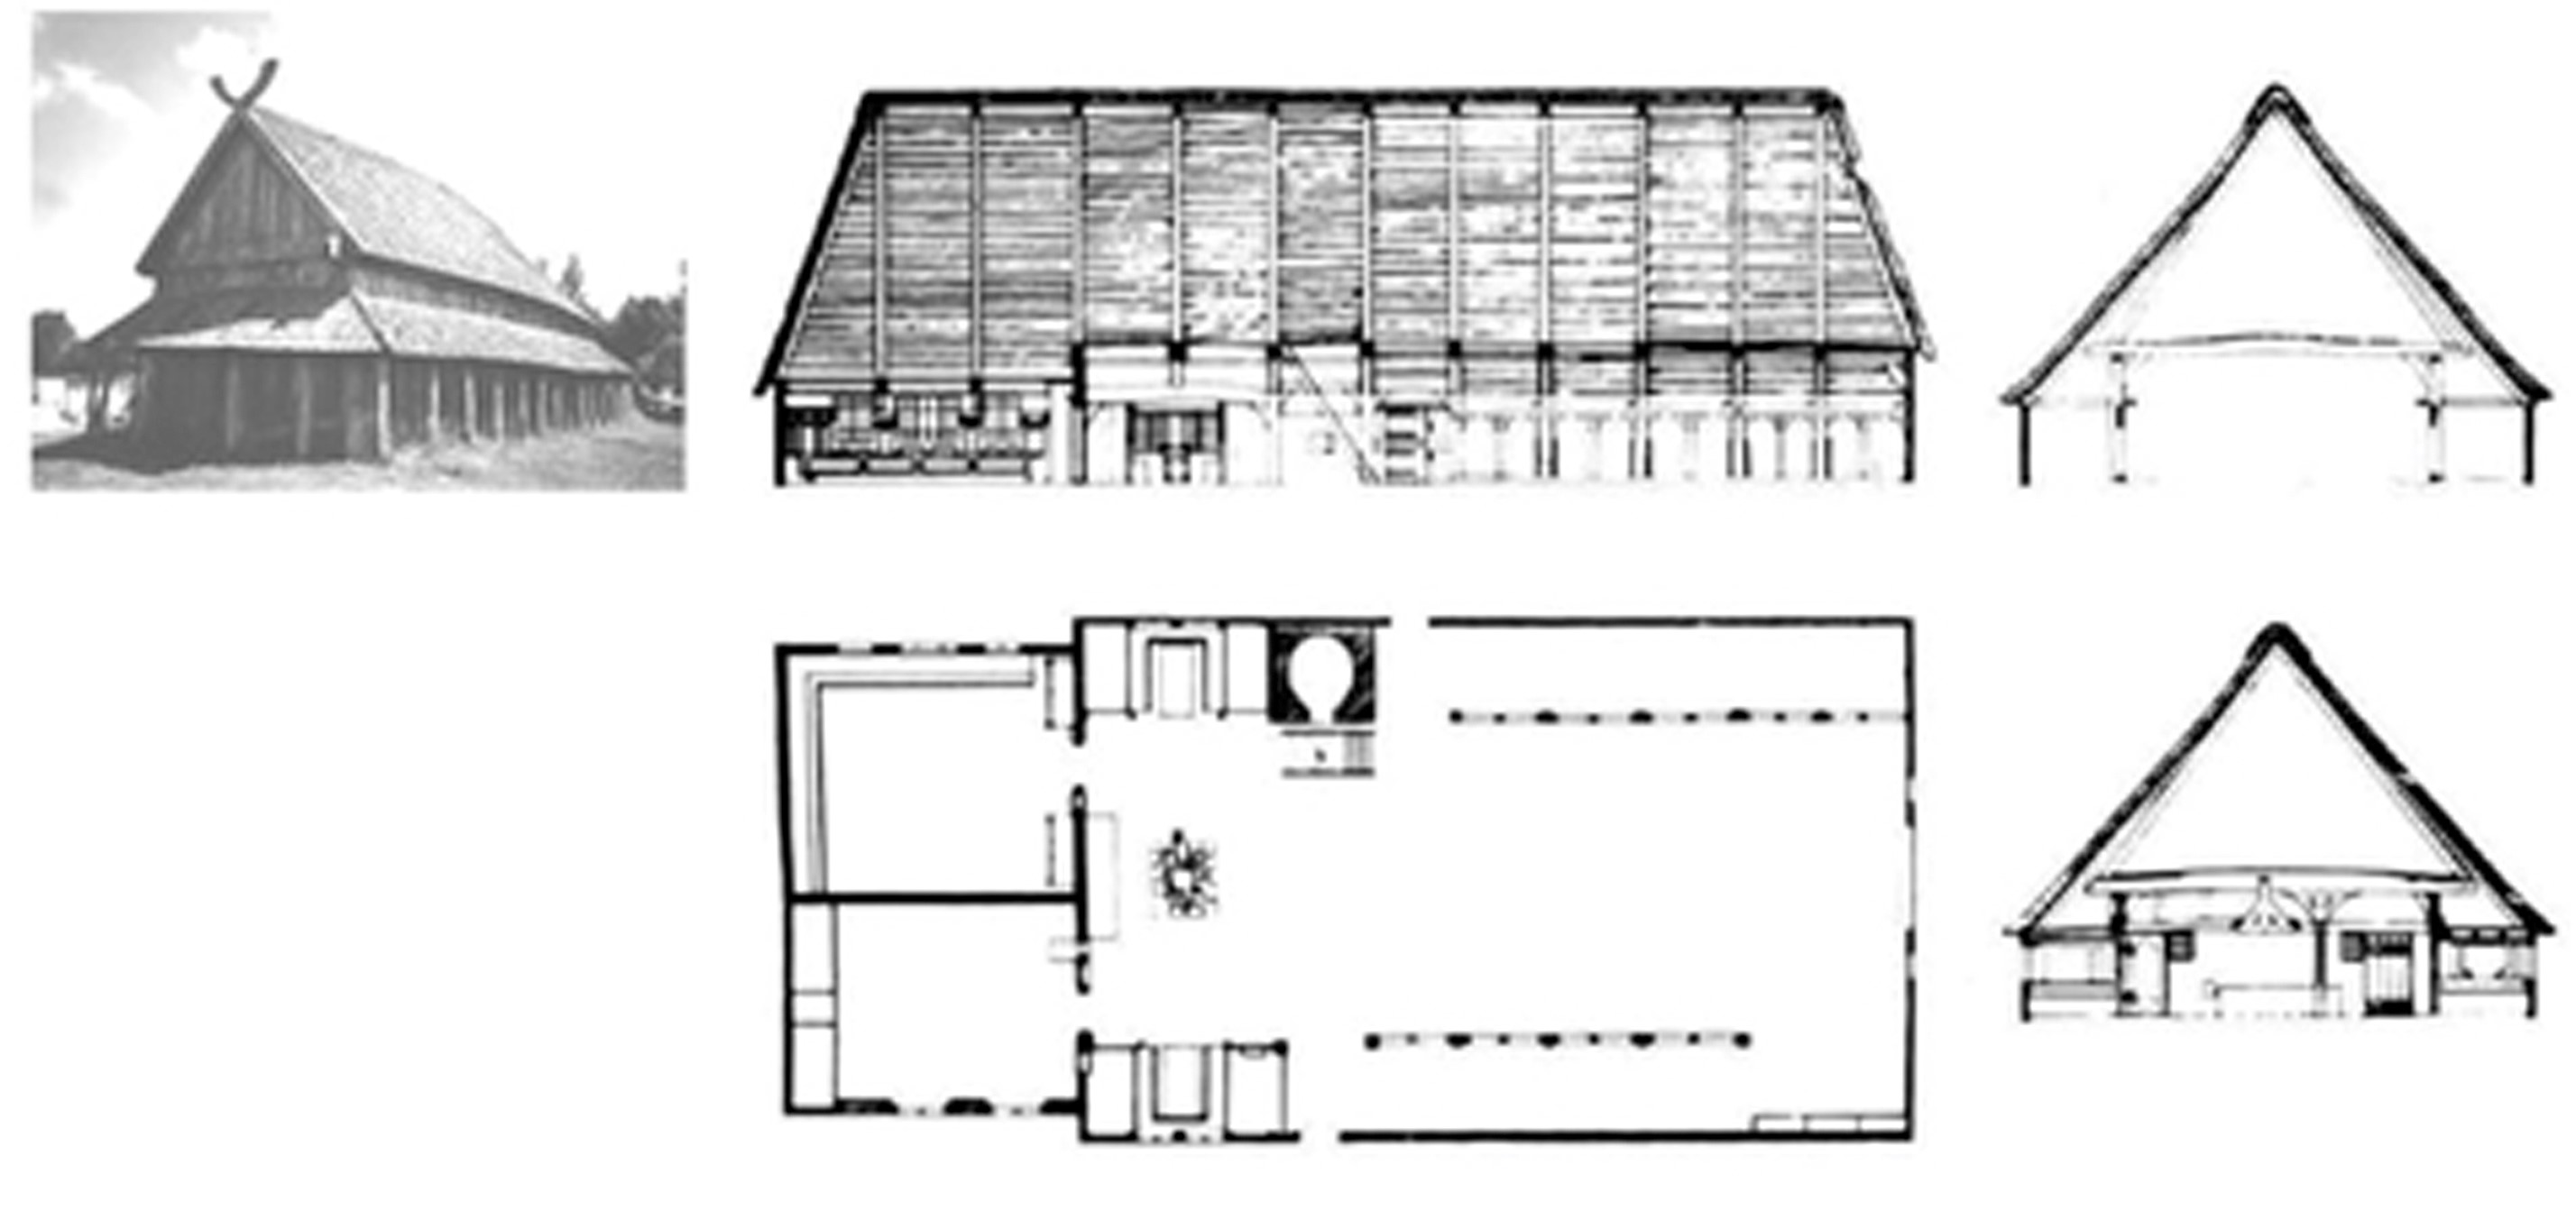 Casa vikinga y casa danesa (Ostenfeldgaarden de 1685), planta y cortes